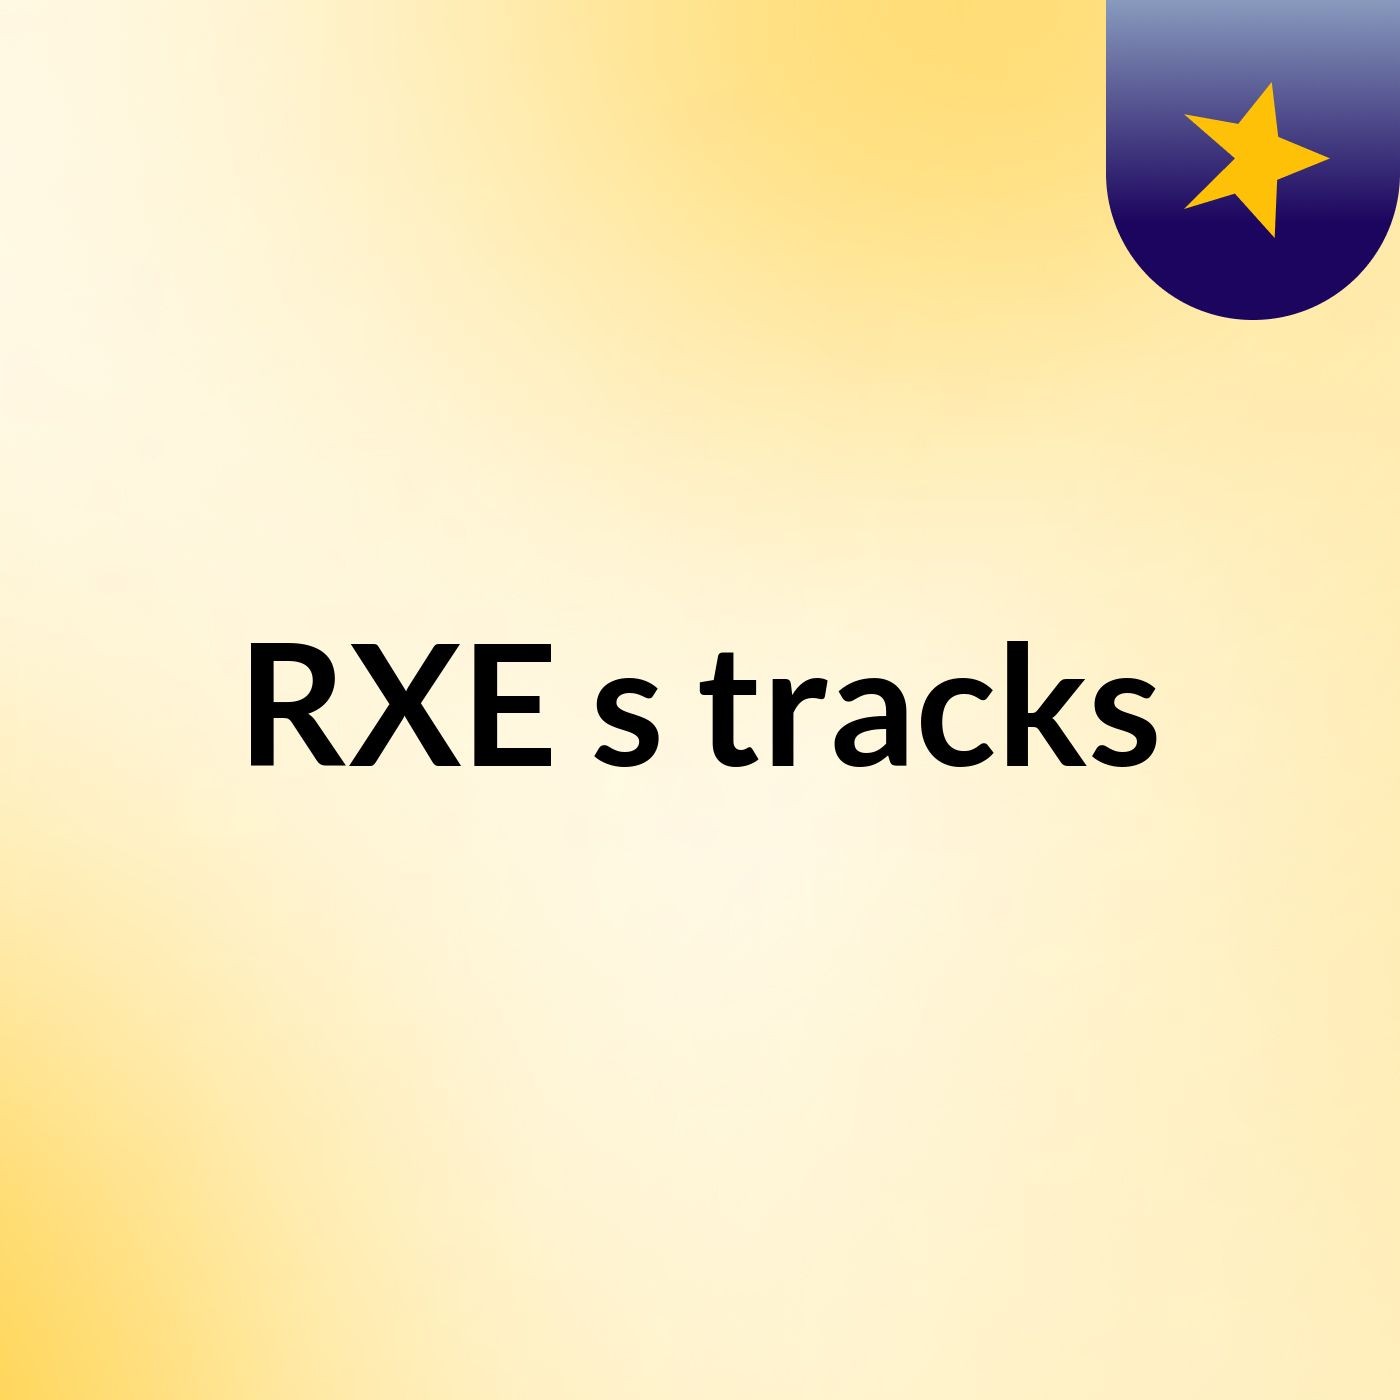 RXE's tracks